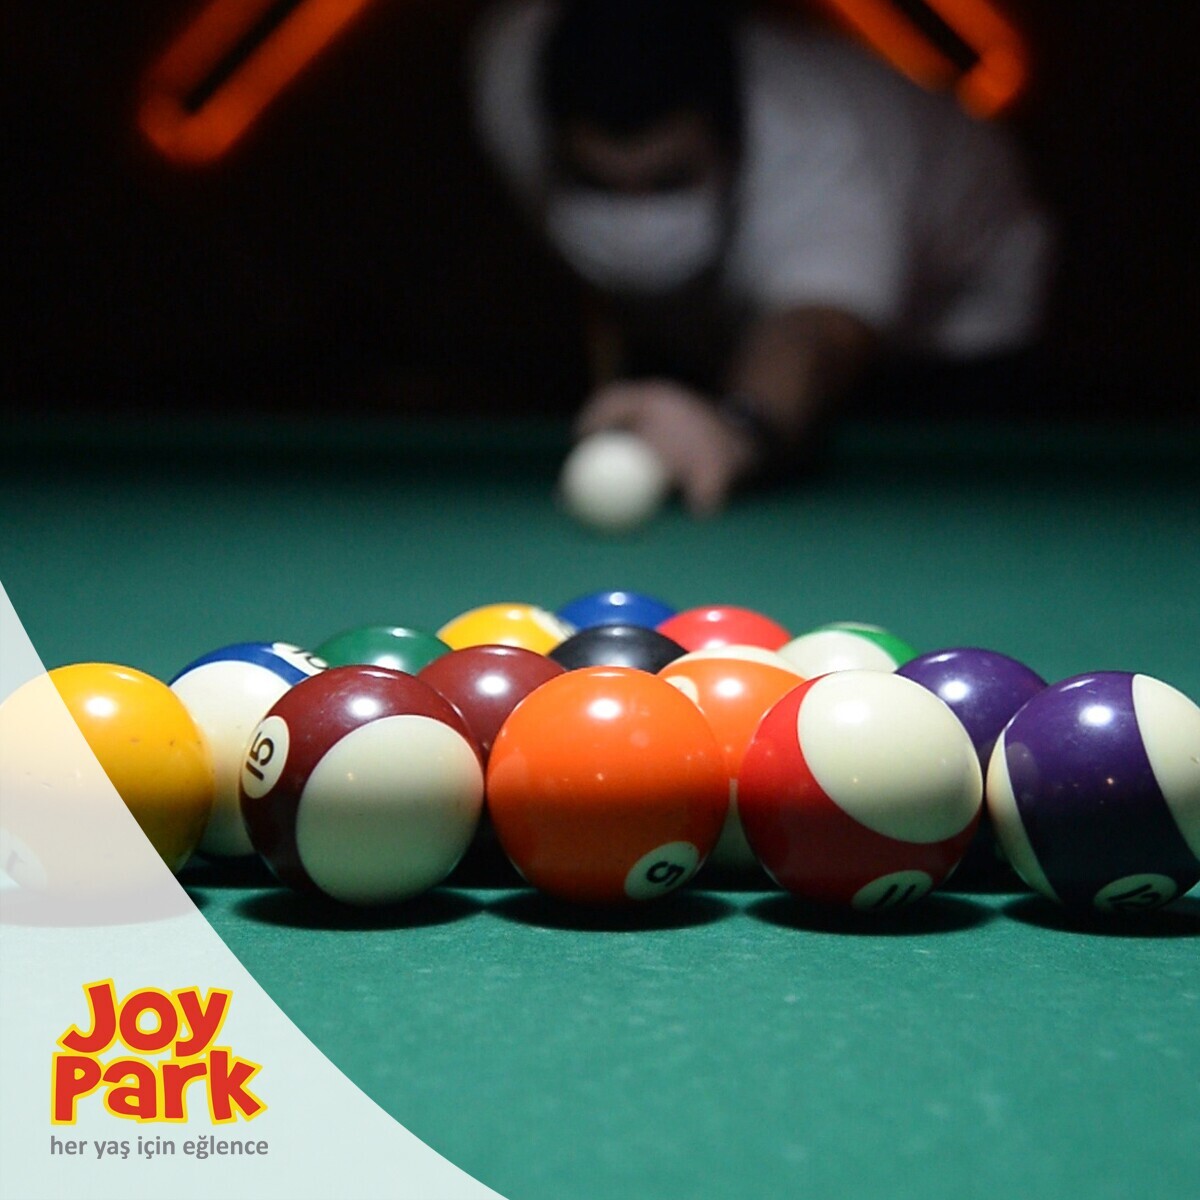 JoyPark Eskişehir Şubelerinde Geçerli 350 TL'lik Oyun Kartı 299 TL!